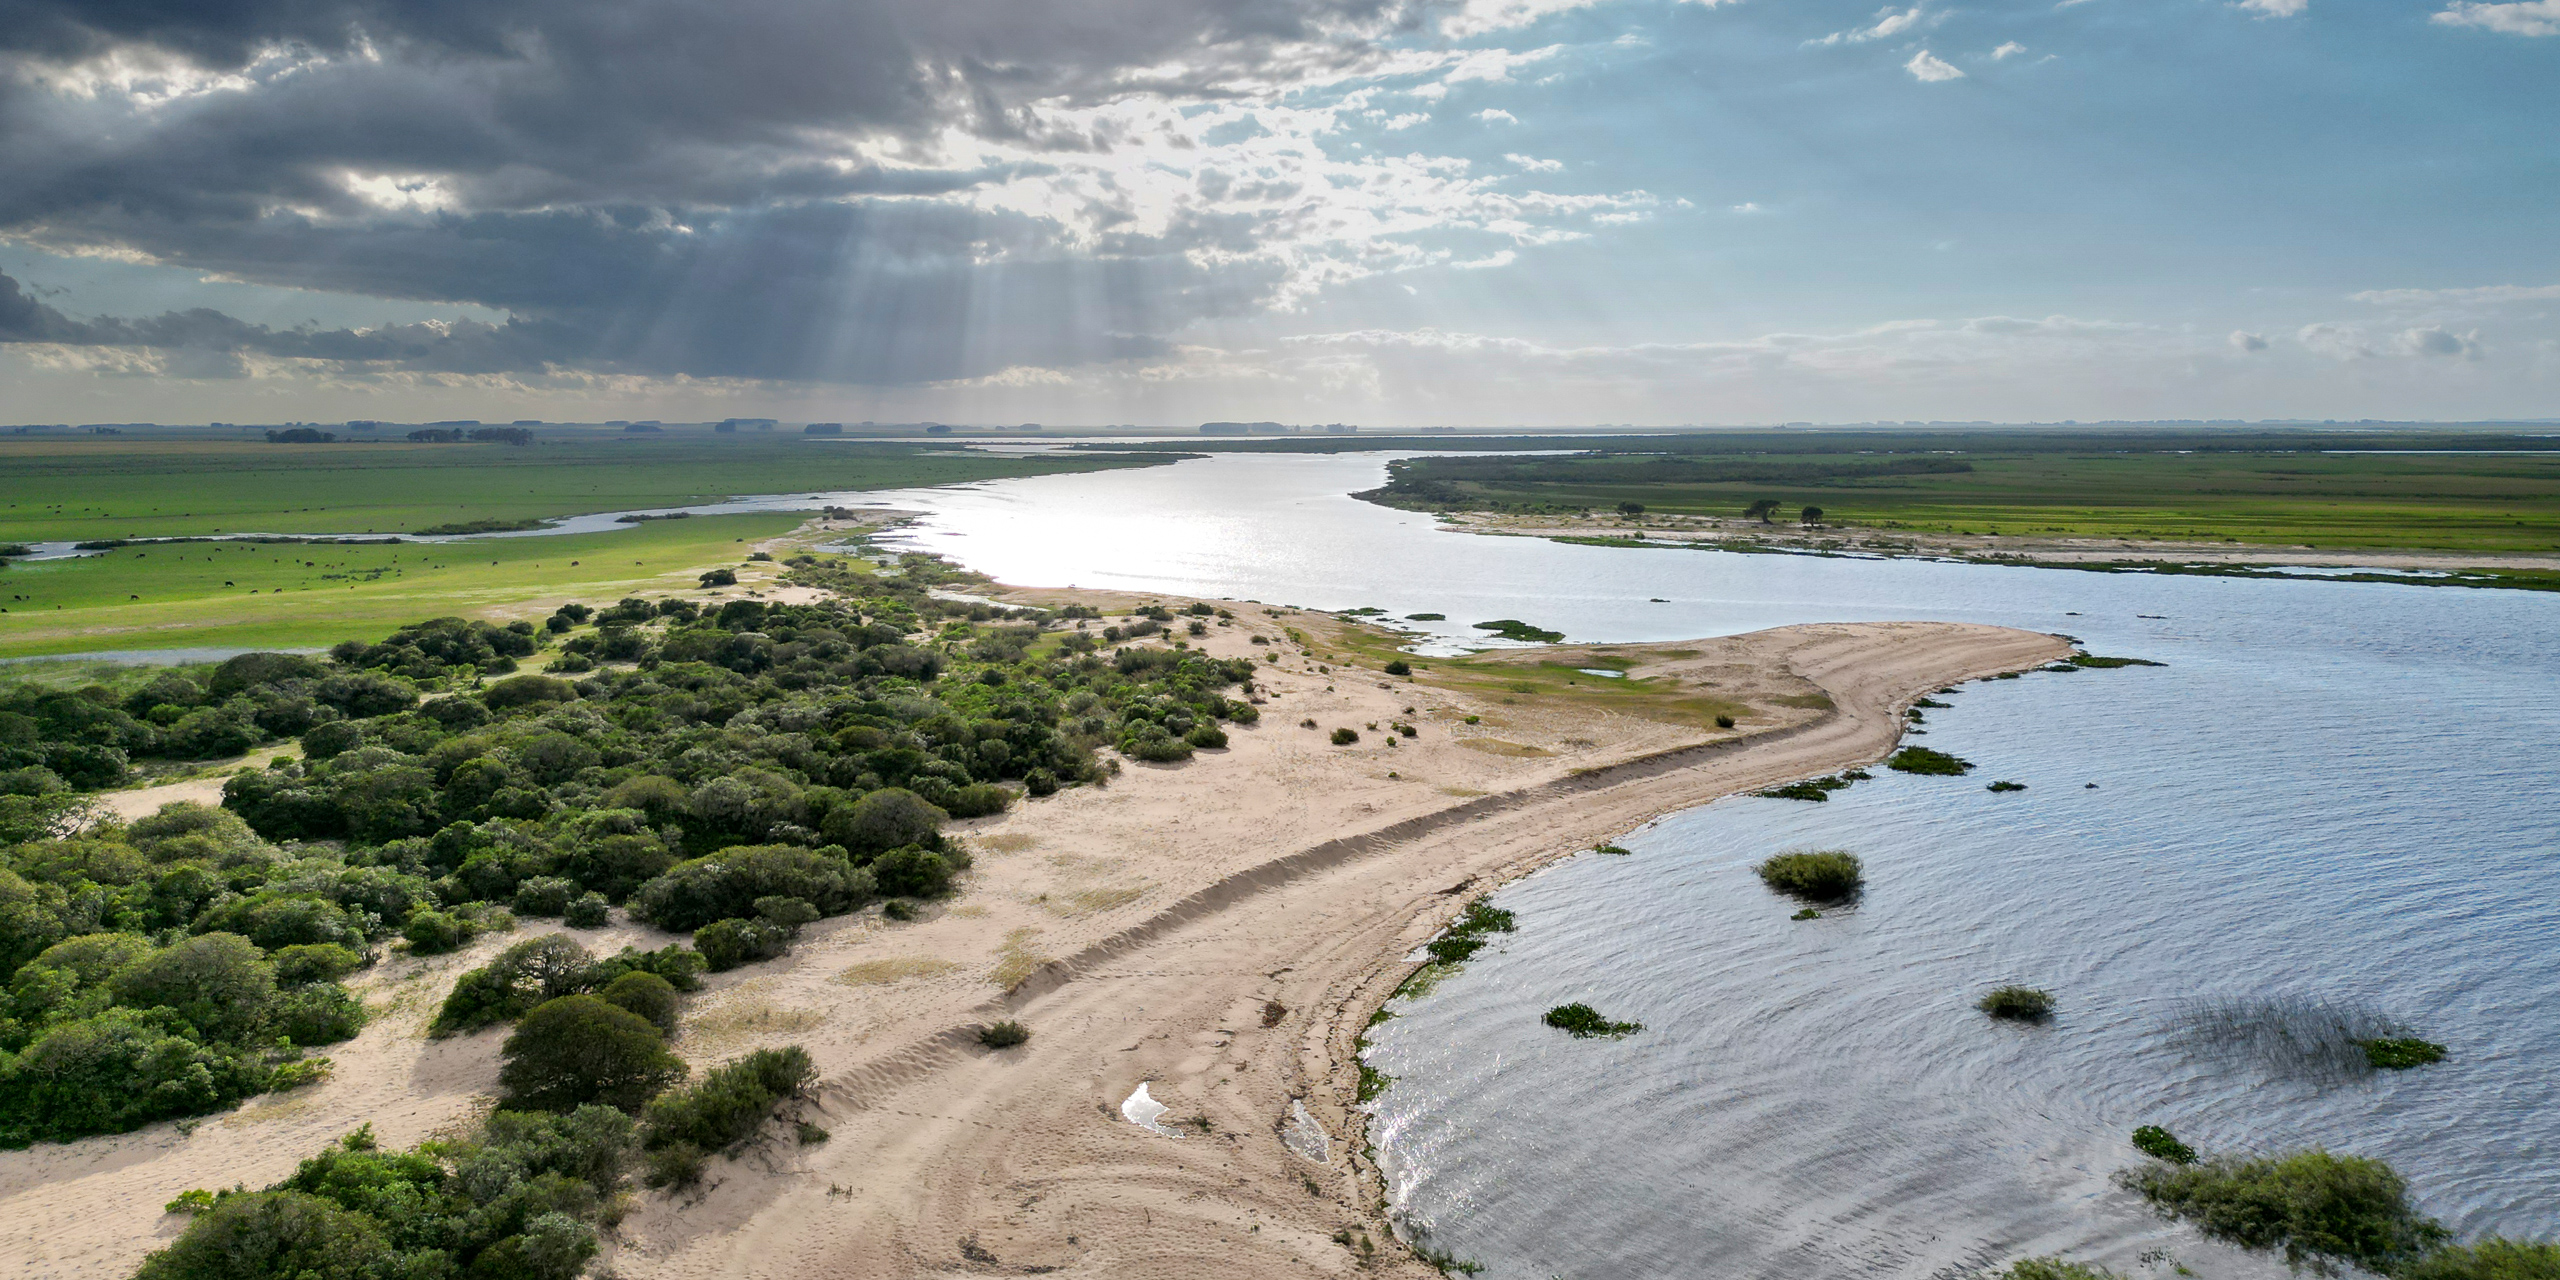 <p>El río Tacuarí confluye con la Laguna Merín, en el este de Uruguay. Los gobiernos de Brasil y Uruguay planean unir cursos de agua para crear una vía navegable que, según afirman, reduciría los costos de transporte e impulsaría el desarrollo (Imagen: <a href="https://www.instagram.com/chatoeitan/">Eitan Abramovich</a> / Dialogue Earth)</p>